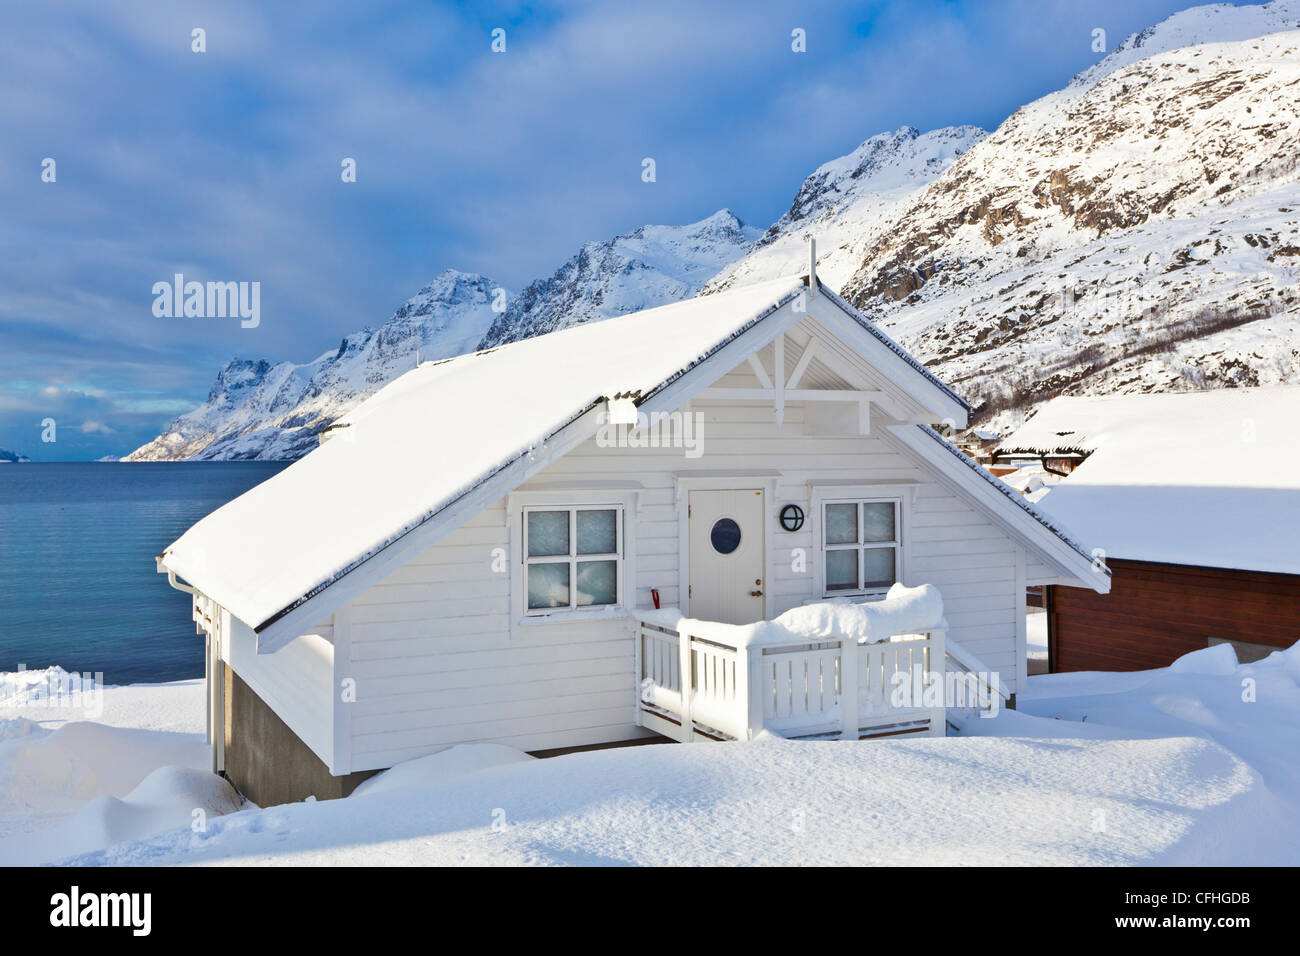 Coperta di neve chalet hutte nel fiordo norvegese villaggio di Ersfjord, isola Kvaloya,Troms, Norvegia, Europa Foto Stock